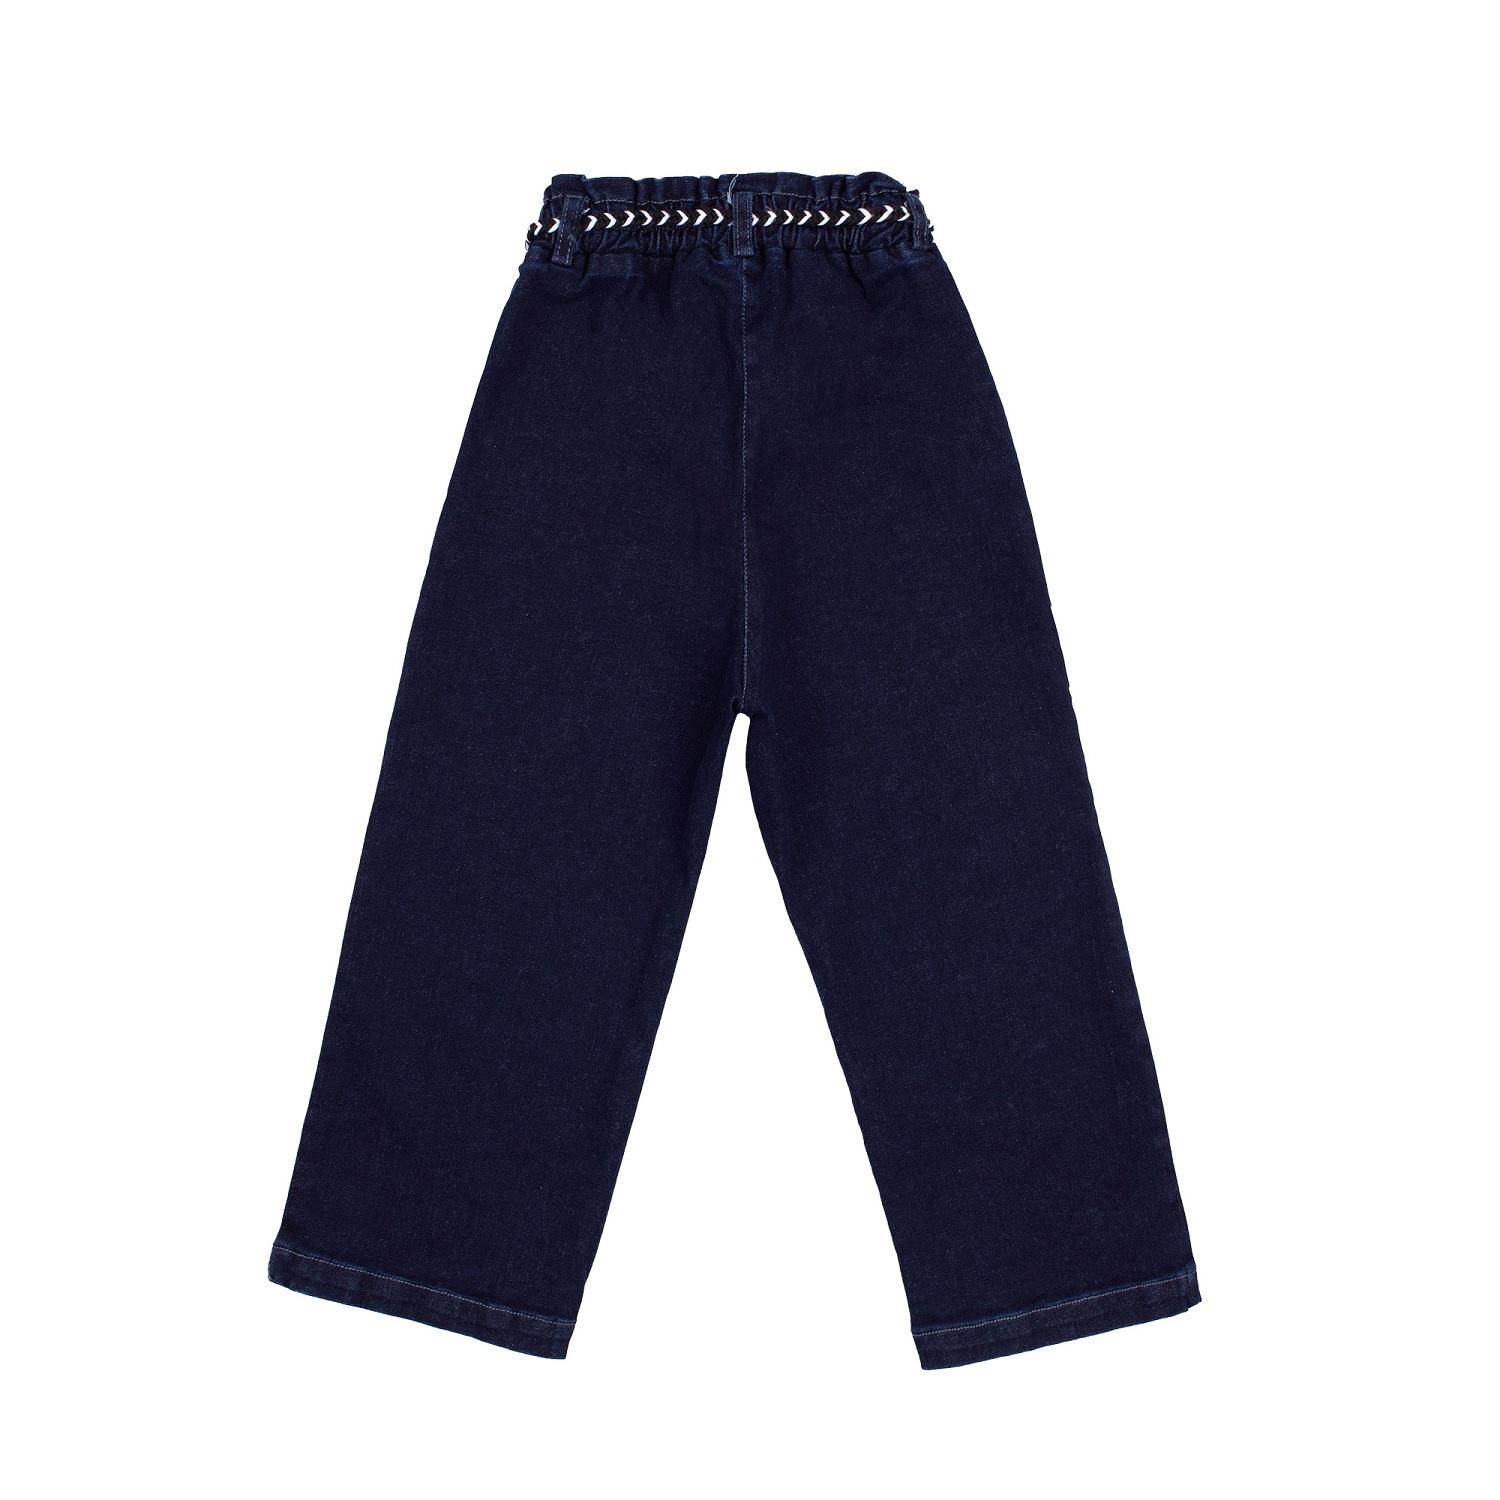 Дитячі штани для дівчинки, темно-сині (ШР626), Бембі